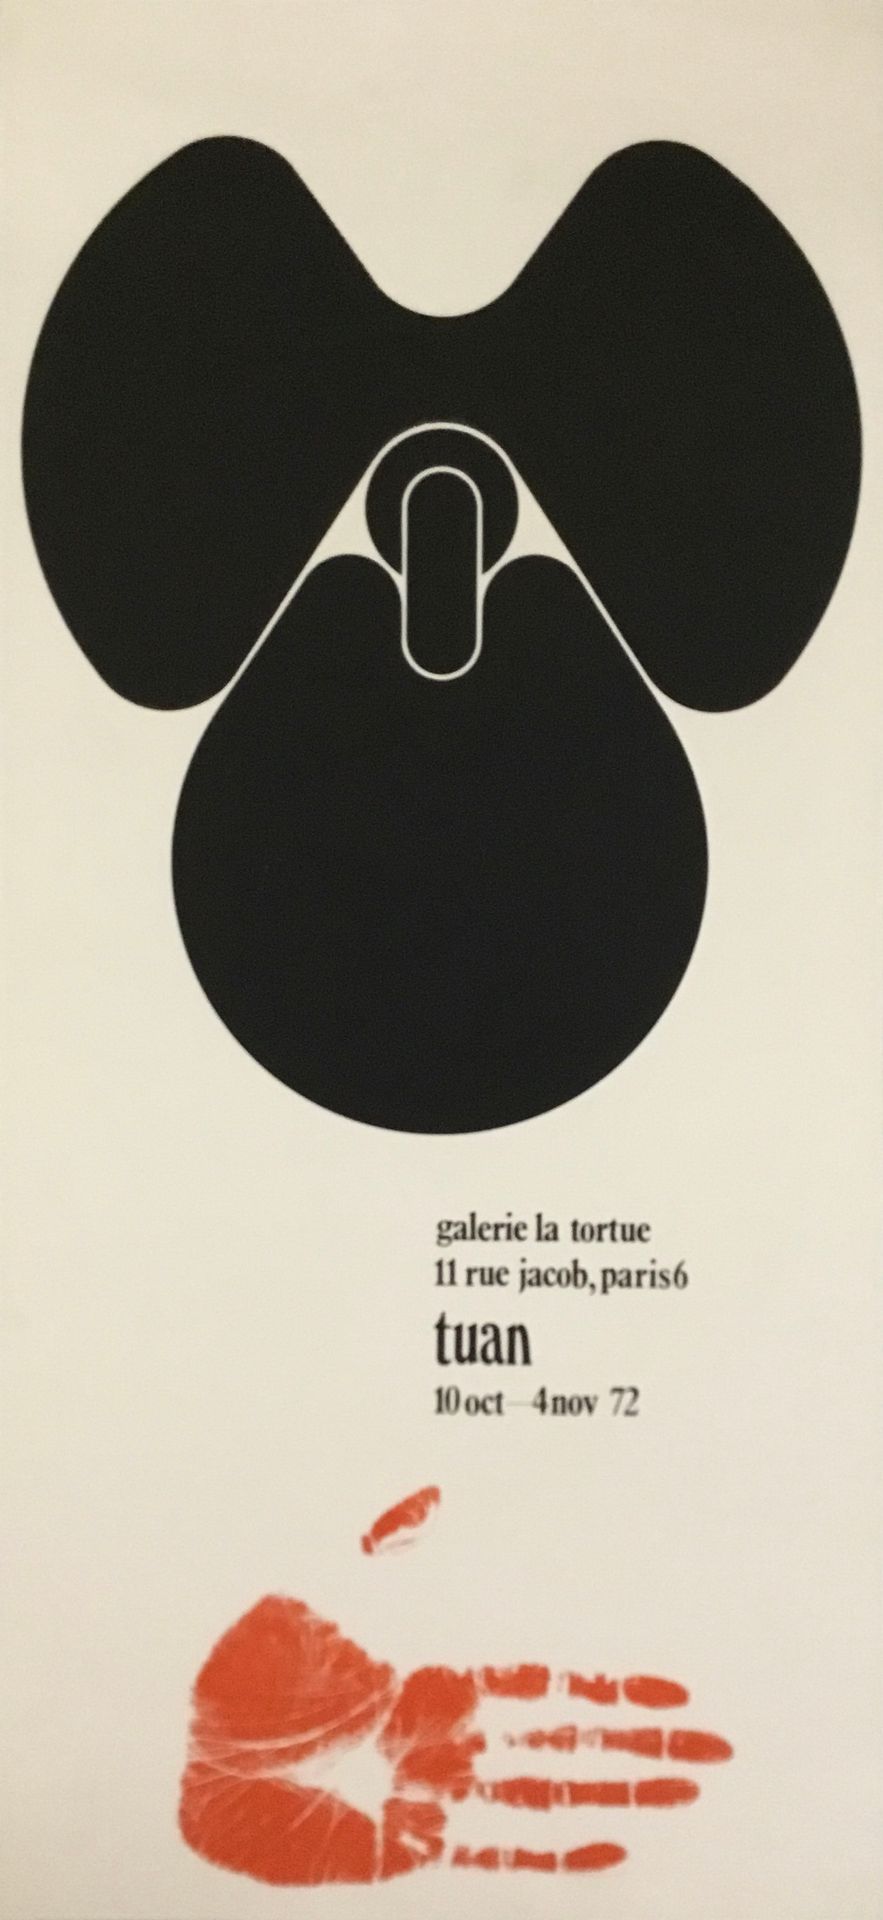 Null TUAN 
Affiche en lithographie 1972 galerie la tortue. 
64 x 30 cm